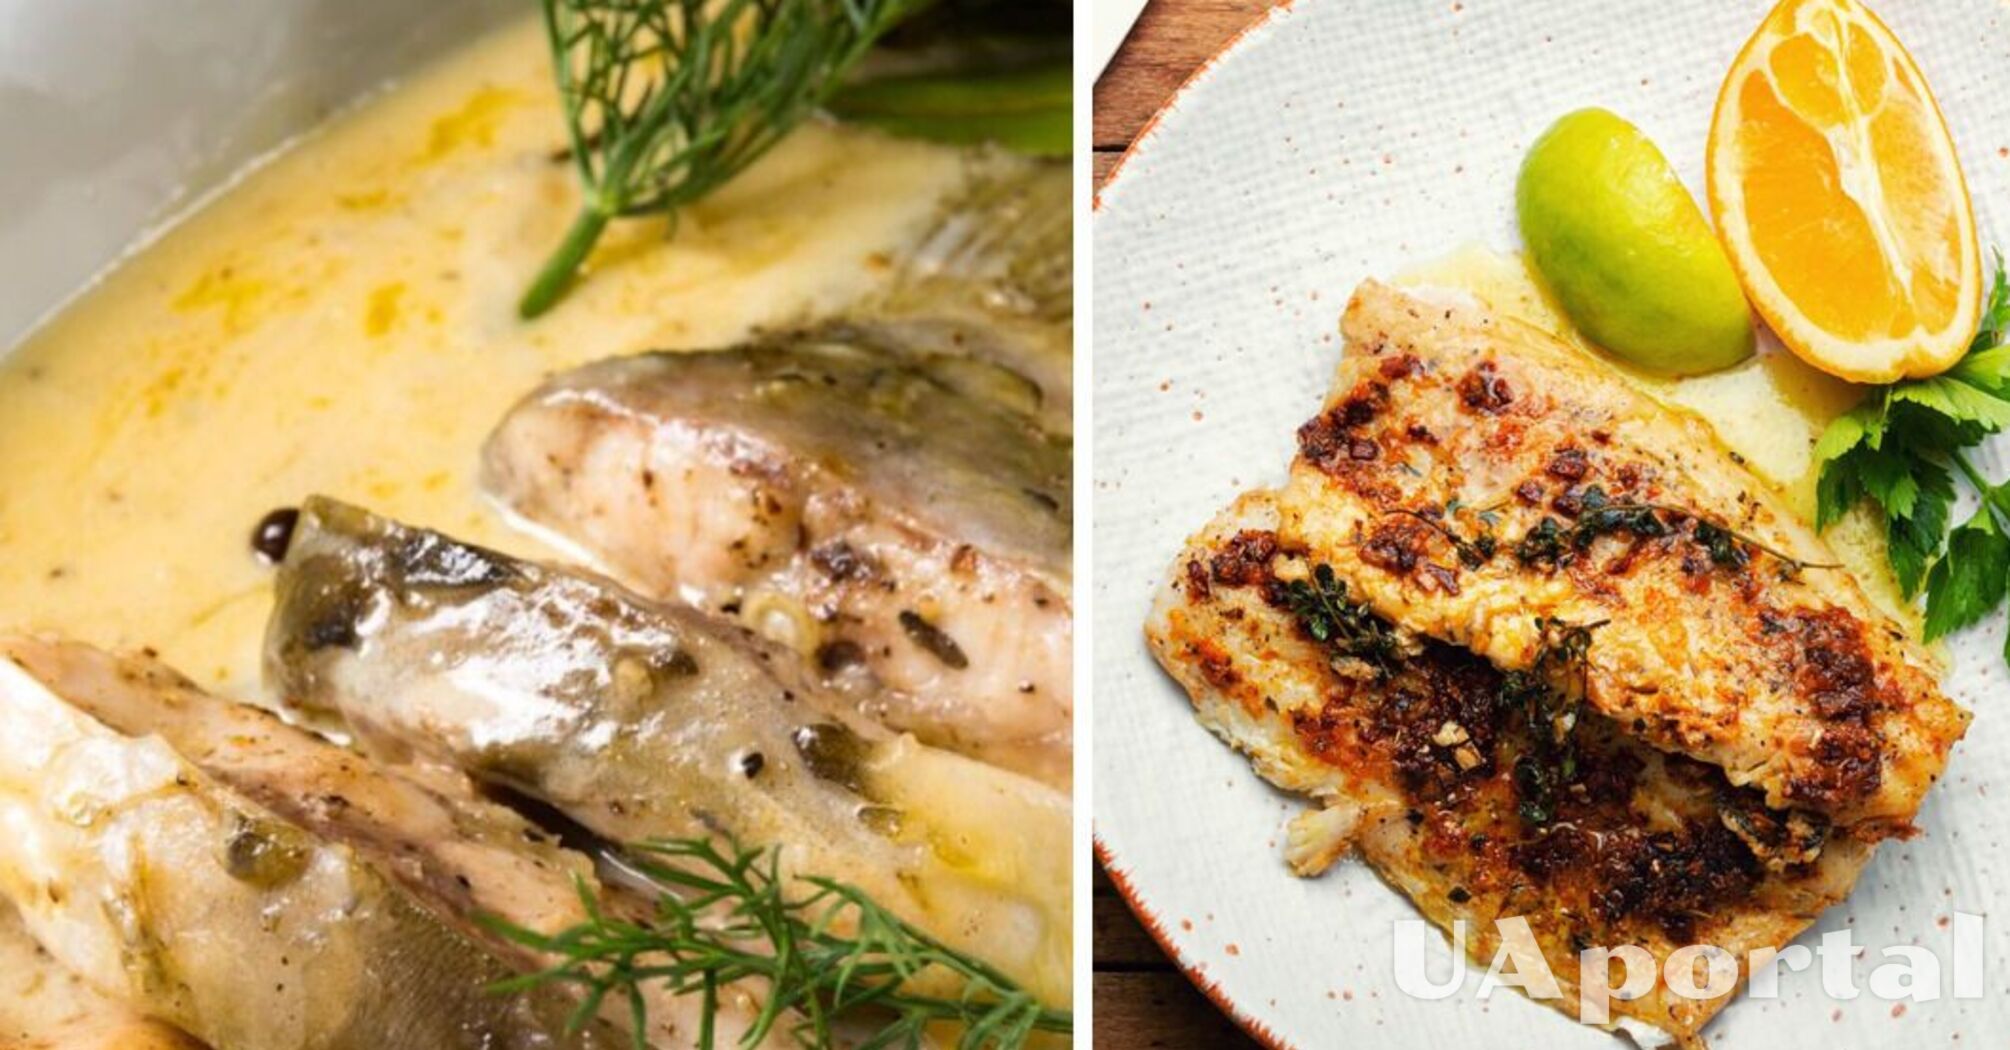 Быстрый ужин в мультварке: рецепт рыбы в сырном соусе за 30 минут